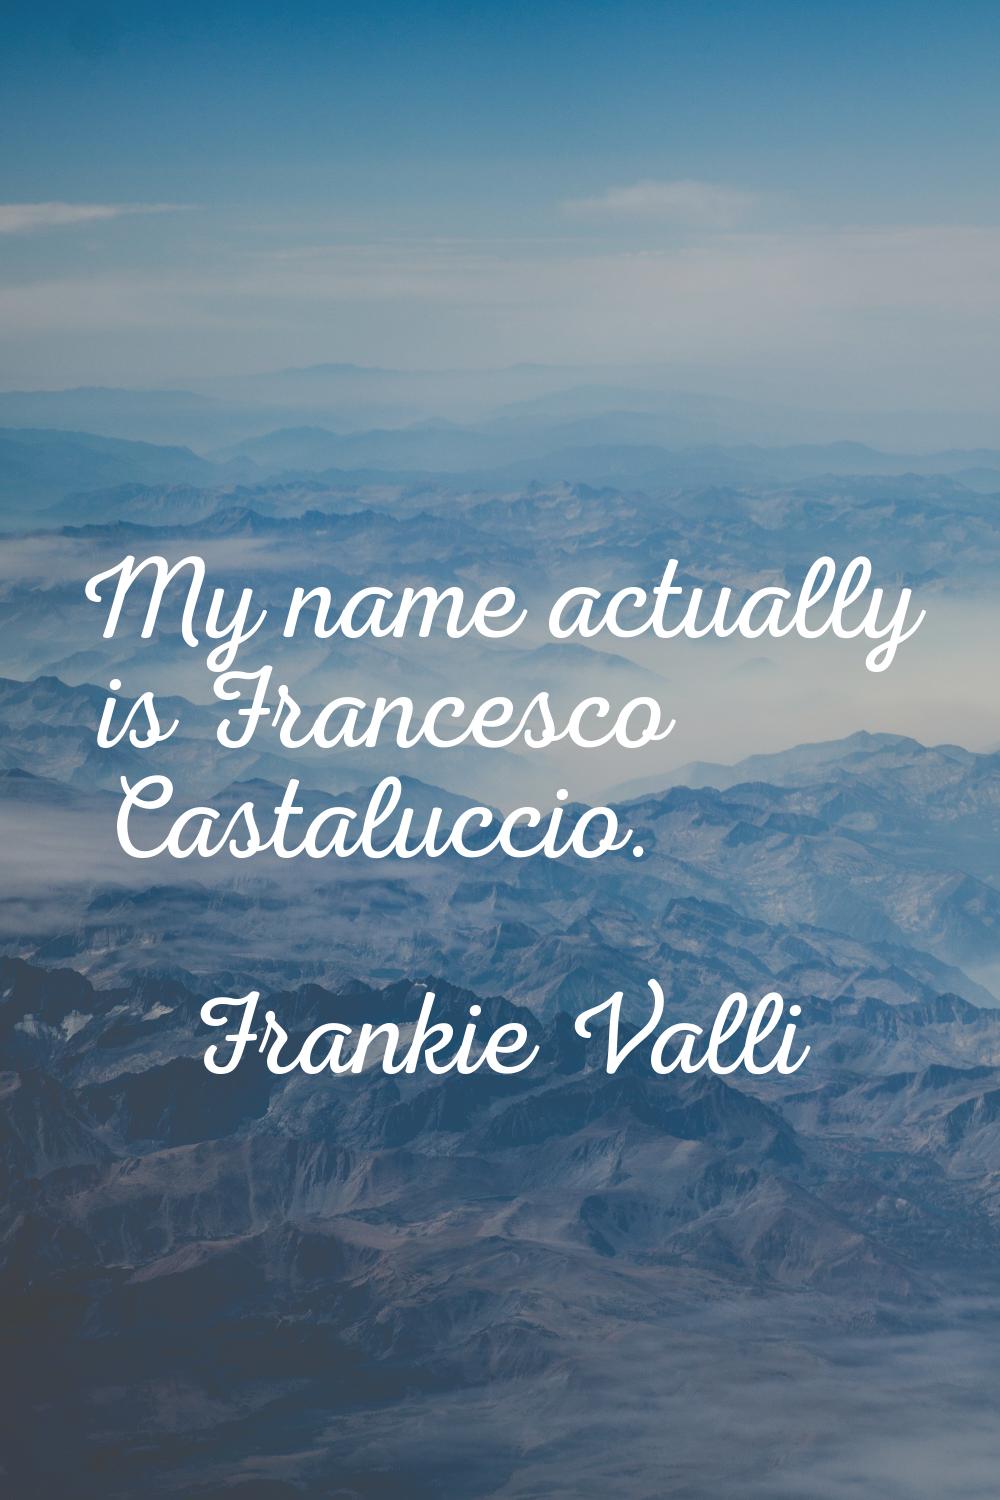 My name actually is Francesco Castaluccio.